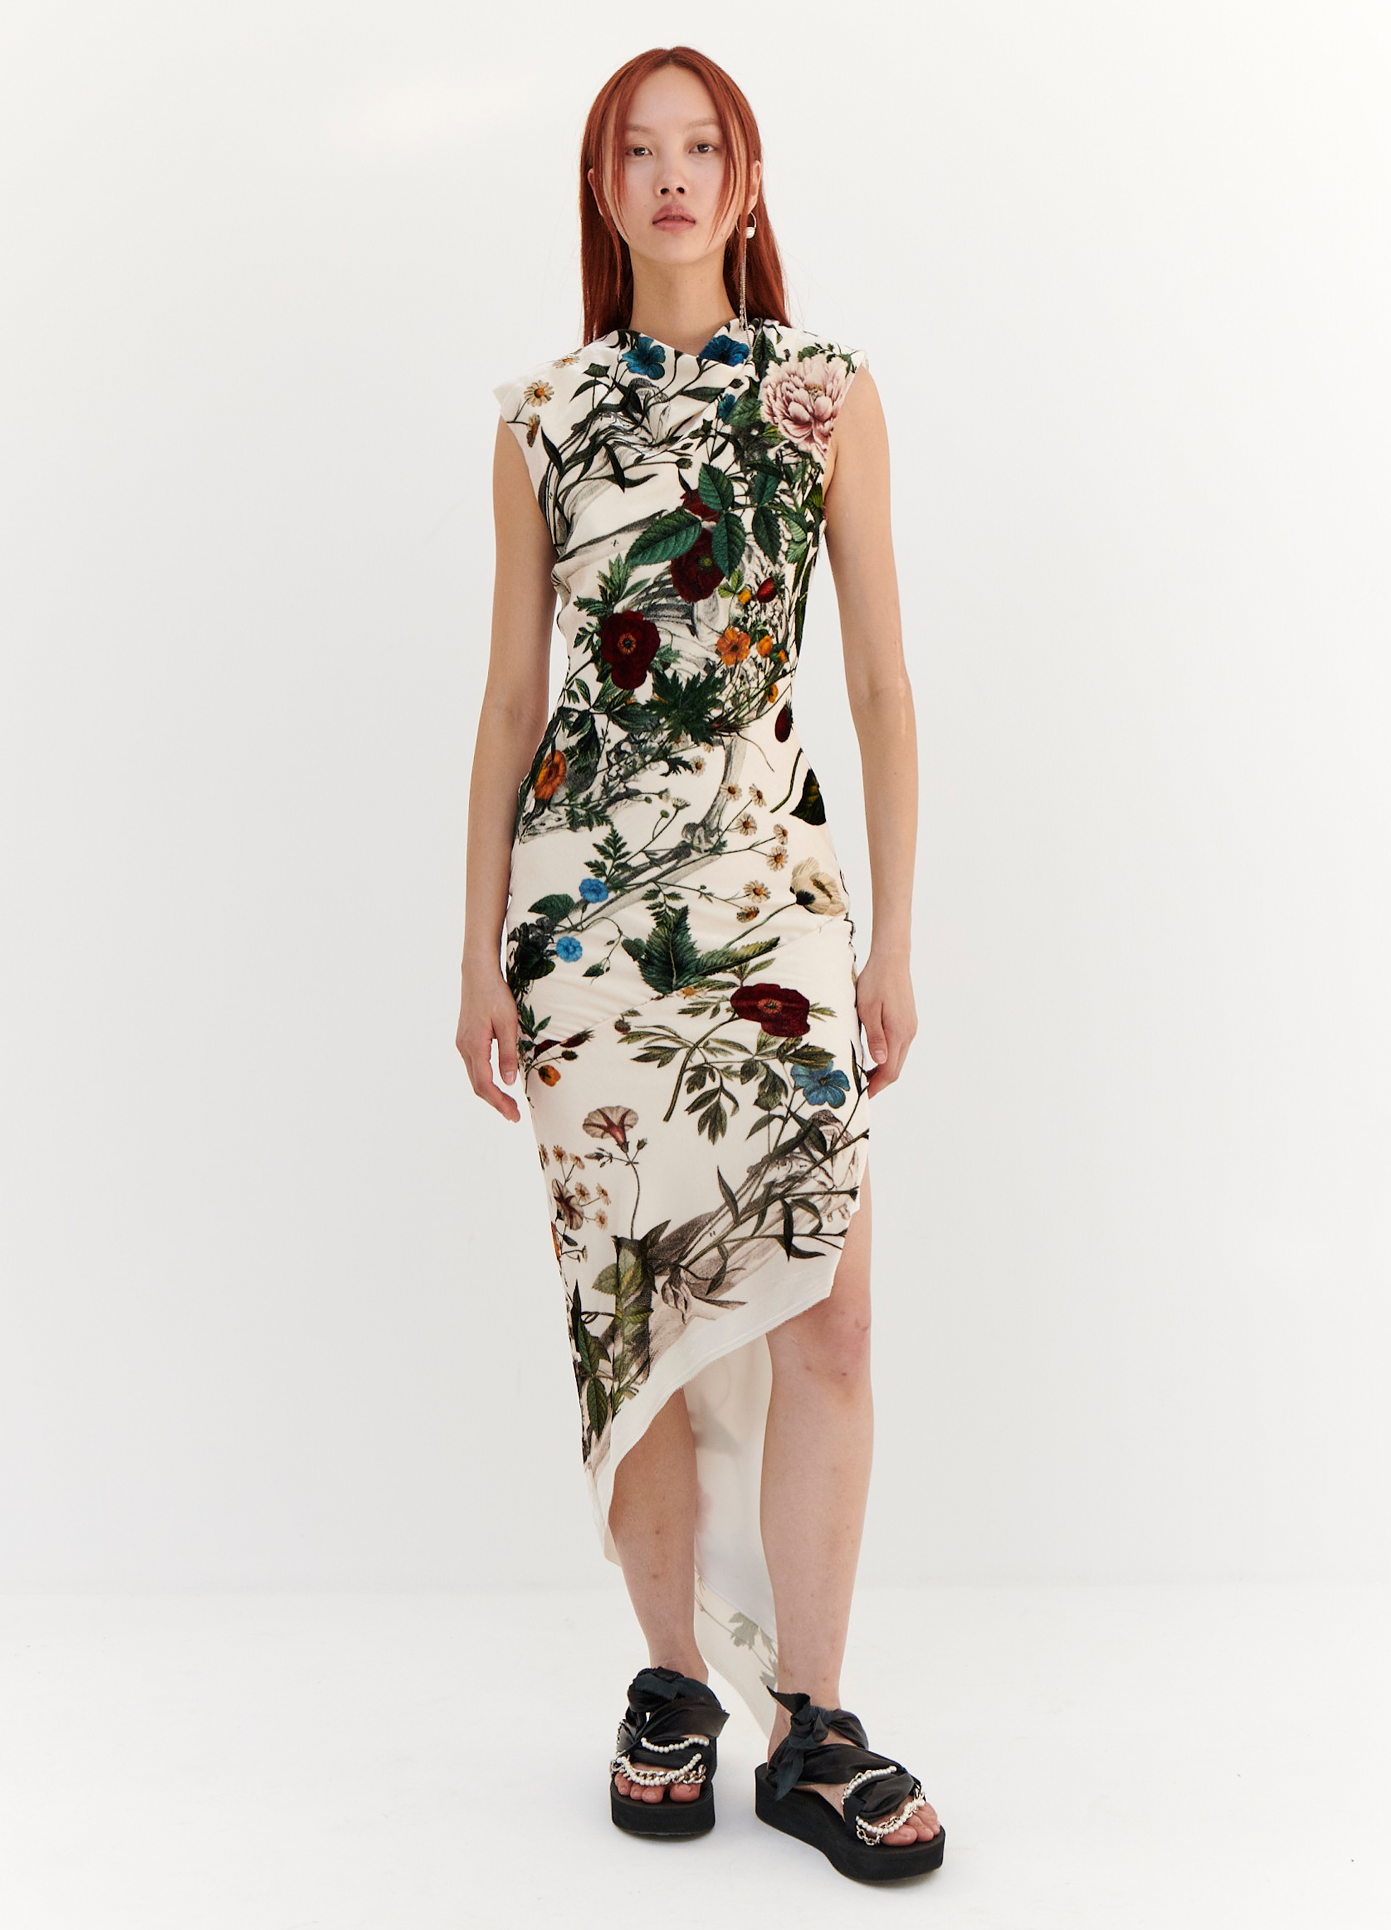 MONSE Velvet Floral Skeleton Print Dress in Ivory Multi on model full front view